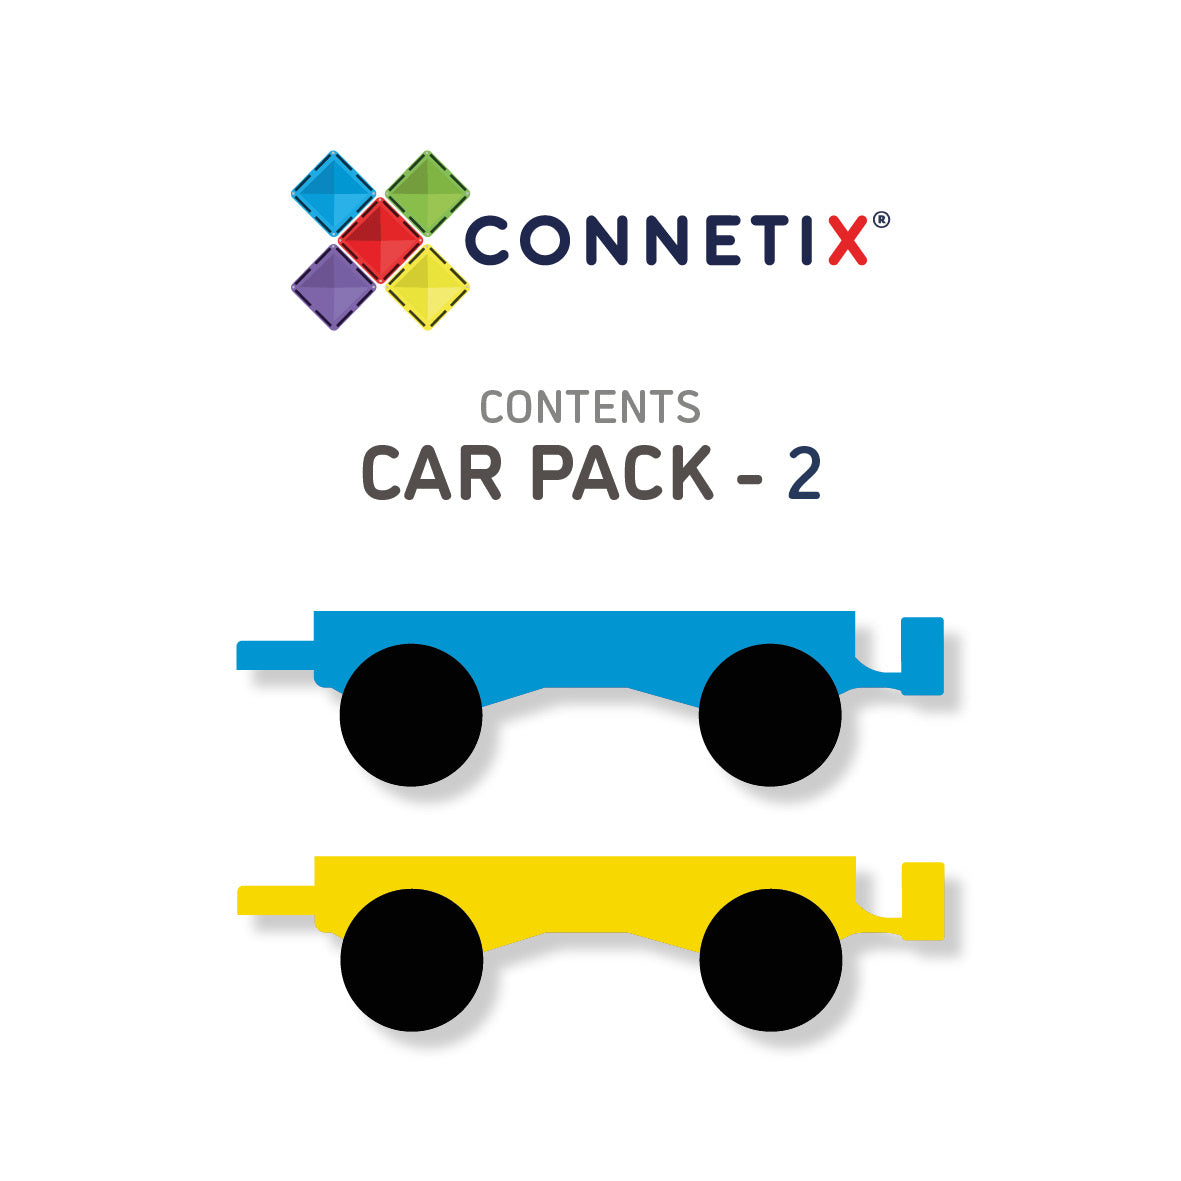 Connetix Magnetic Tiles Car Pack 2 Piece contents